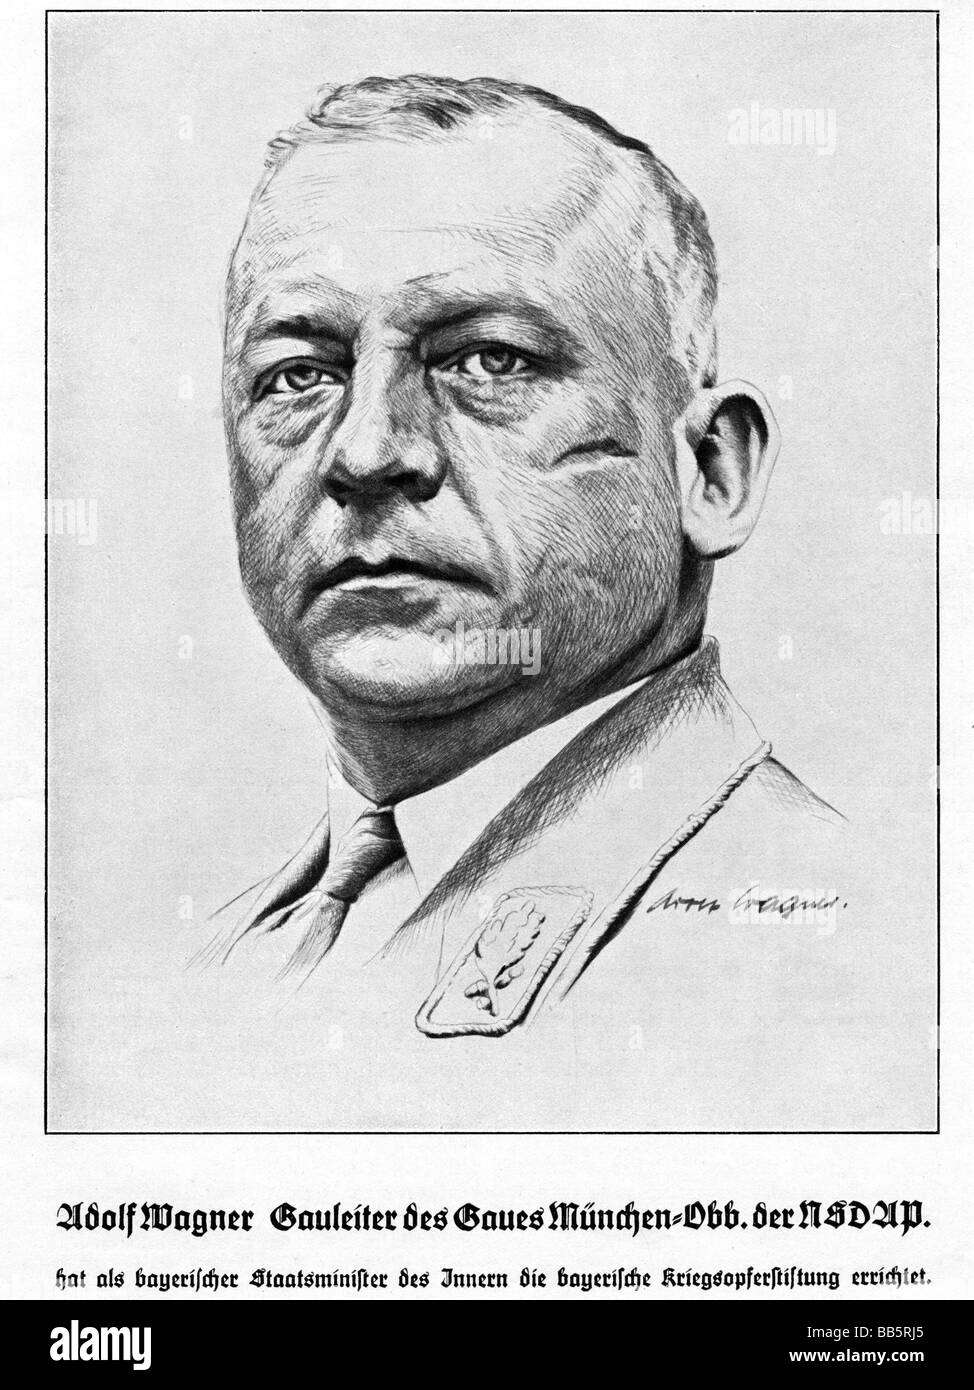 Wagner, Adolf, 1.10.1890 - 12.4.1944, deutscher Politiker (NSDAP), Gauleiter von München-Oberbayern 1.11.1930 - 12.4.1944, Porträt, Zeichnung, 1930er Jahre, Stockfoto